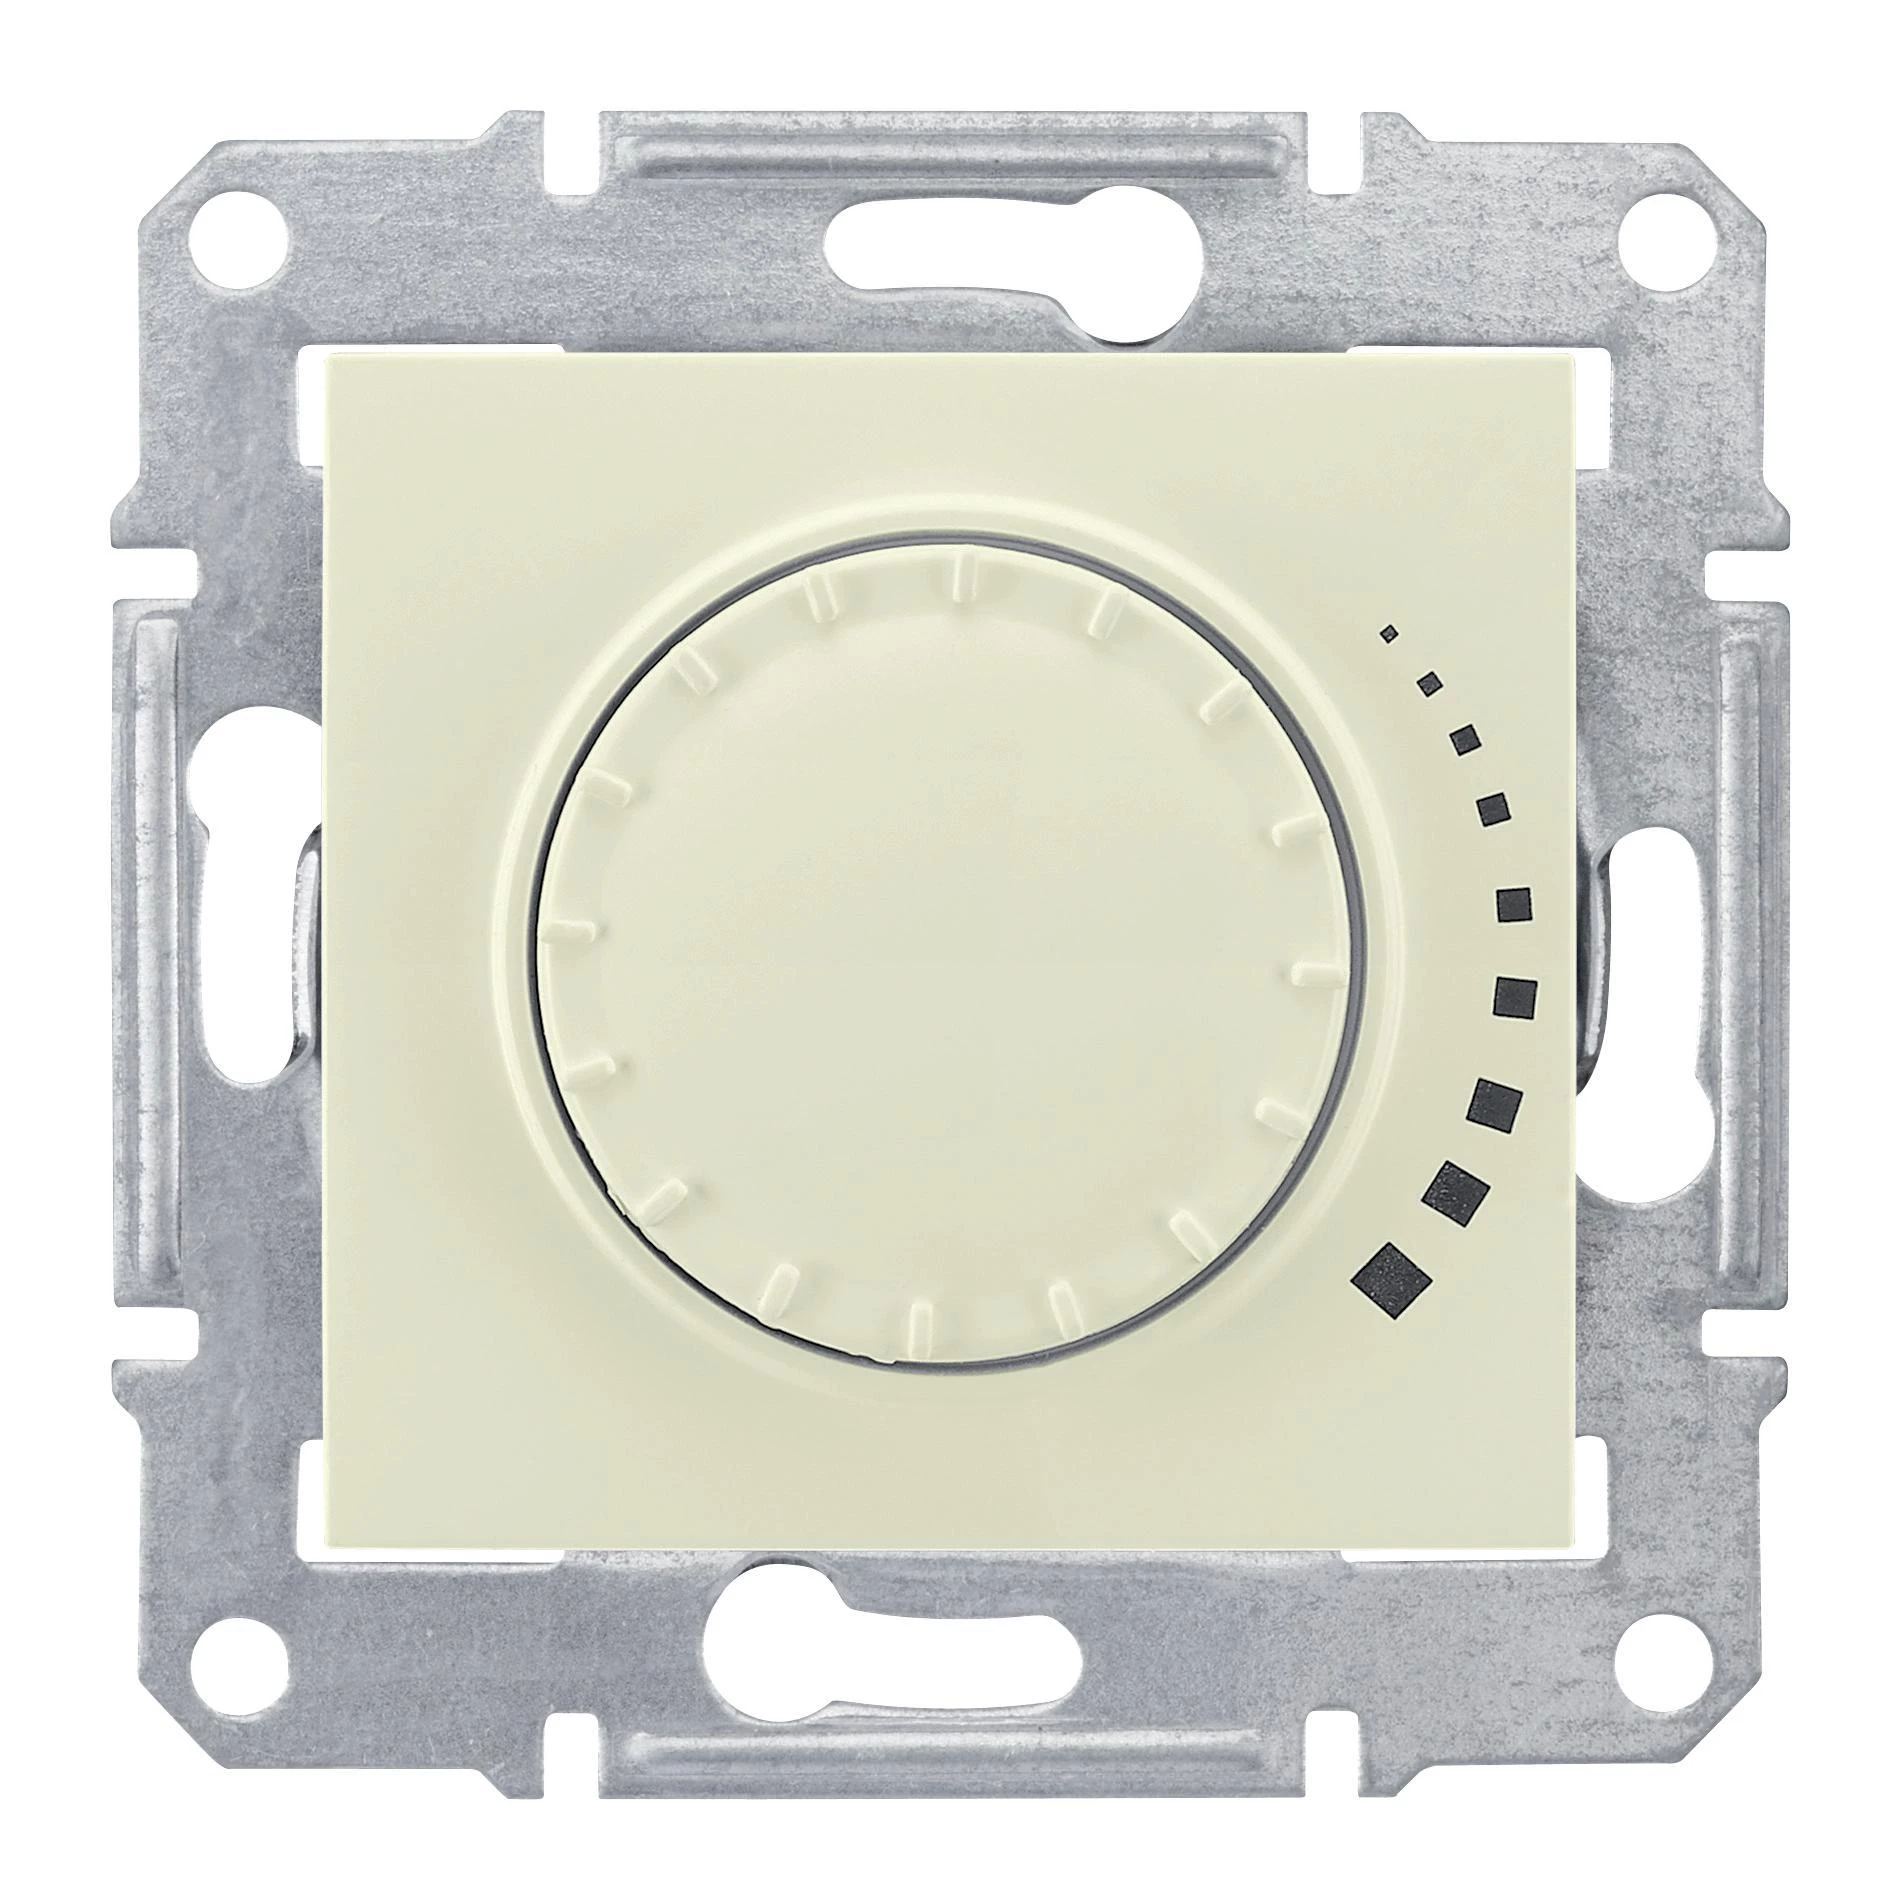  артикул SDN2201247 название Светорегулятор поворотно-нажимной 400Вт LED (универсальный) , Бежевый, серия Sedna, Schneider Electric